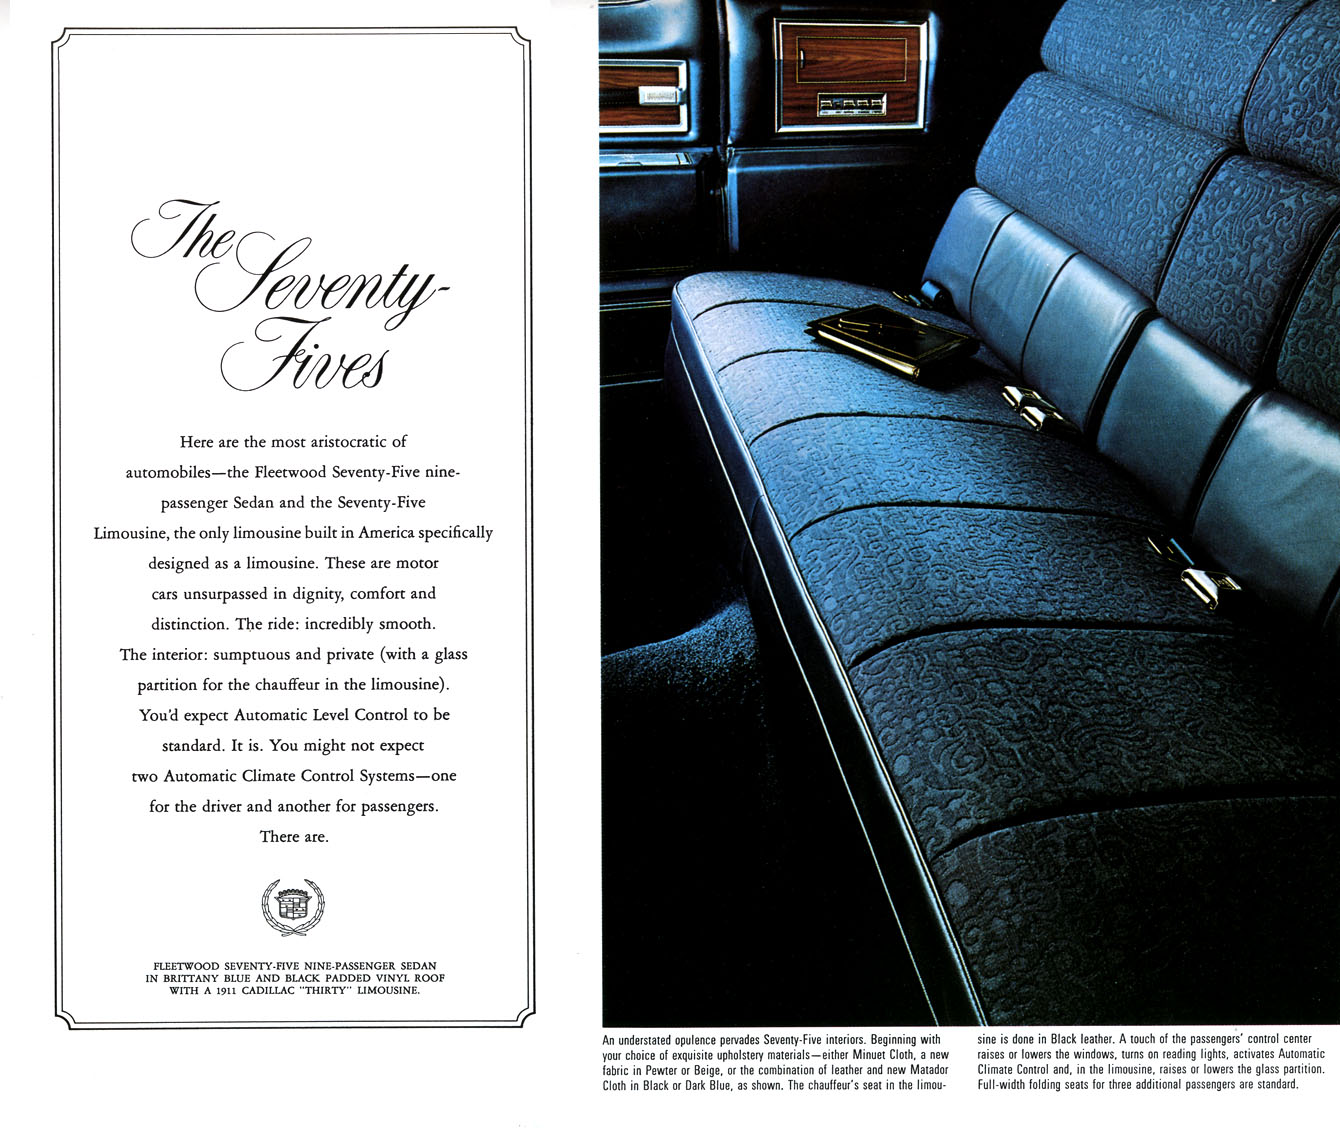 1972 Cadillac Brochure Page 2